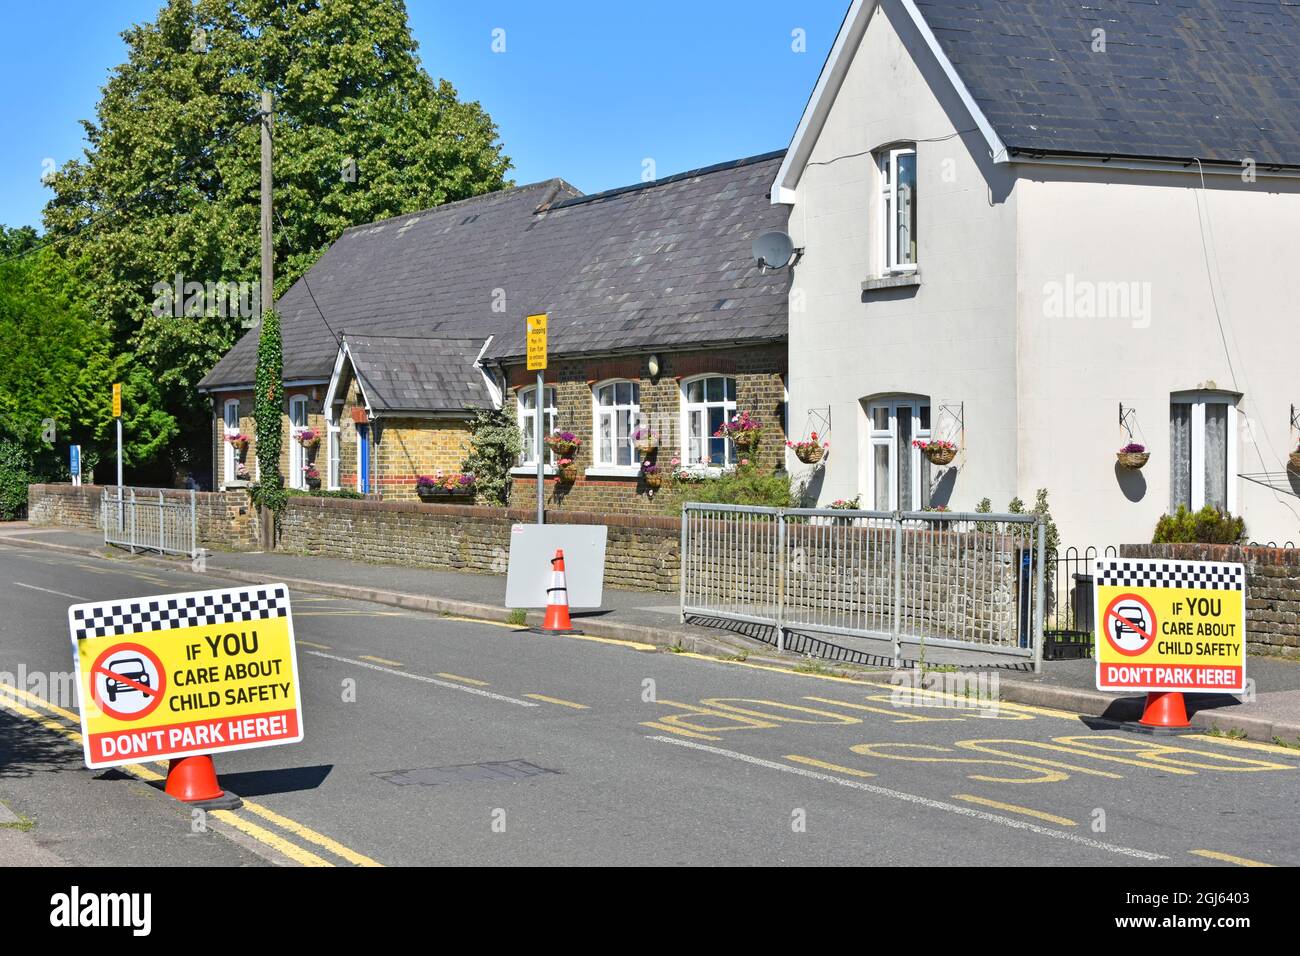 Les restrictions de stationnement dans la rue du village à l'extérieur de la porte d'entrée de l'école primaire ne sont pas assez d'affiches de sécurité routière pour enfants en usage à Kelvedon Hatch Essex, Angleterre Banque D'Images